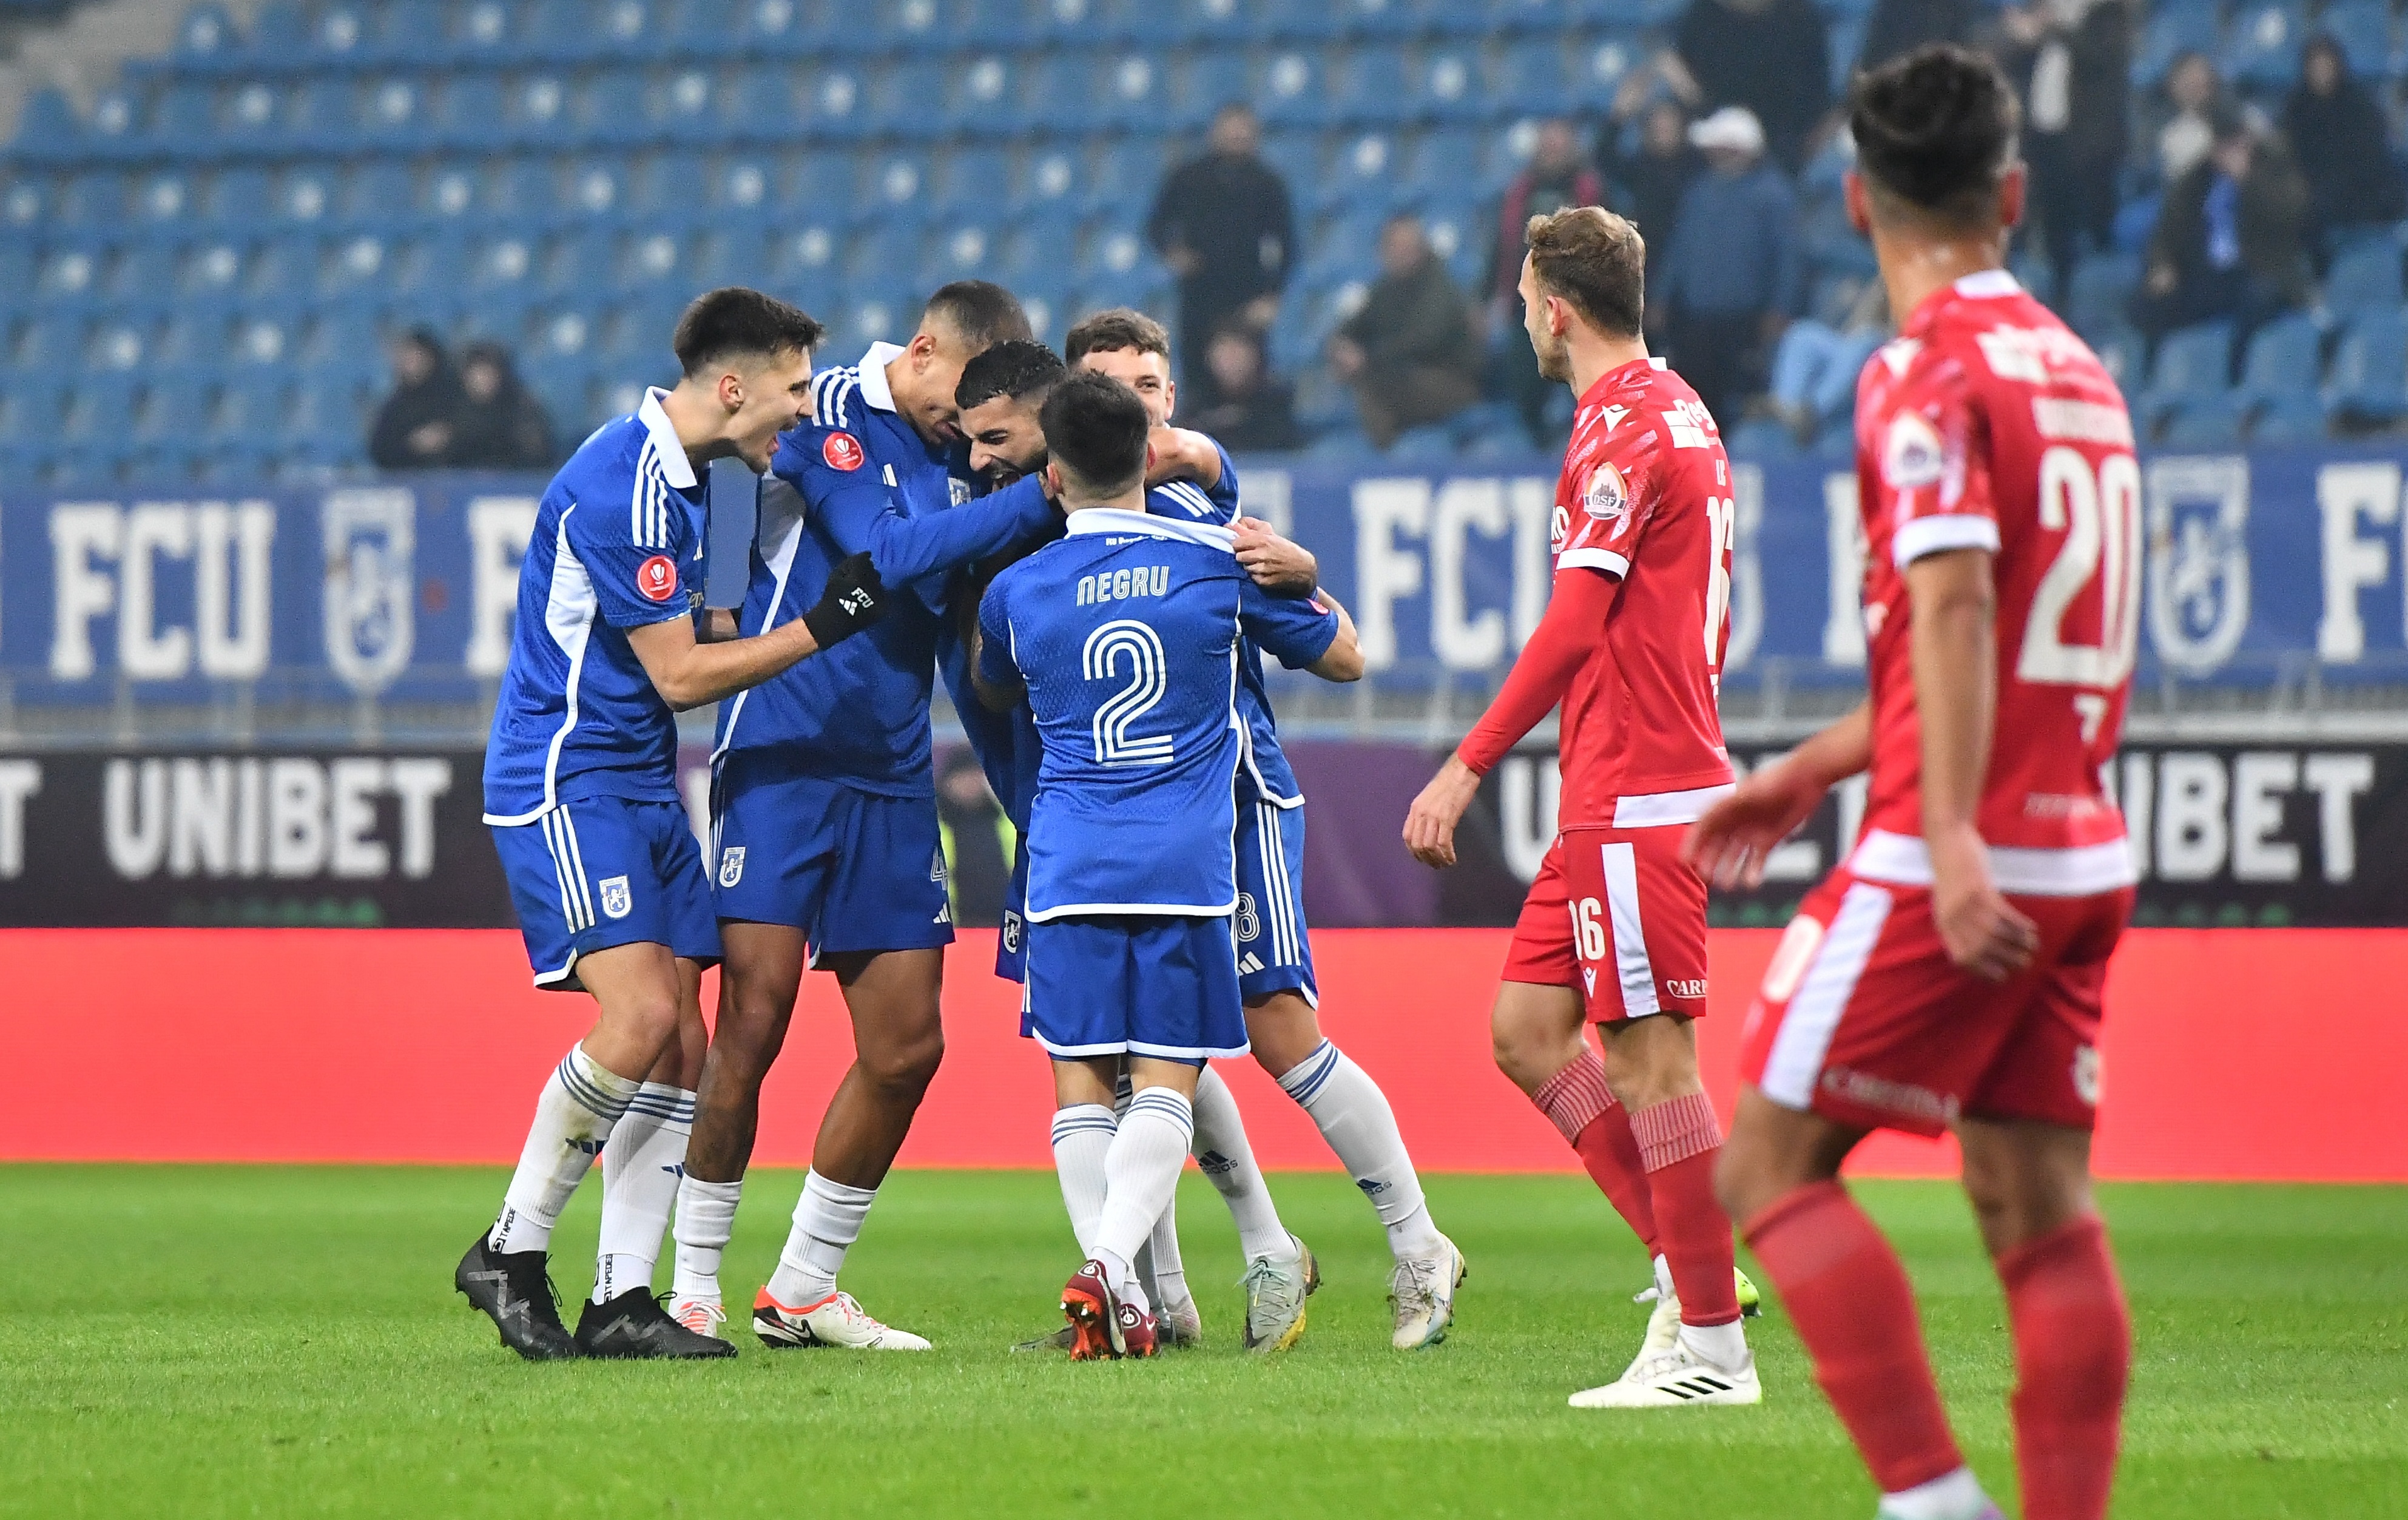 FCU Craiova - Dinamo 2-1. Derby aprins în Bănie! ”Câinii” au avut o ratare imensă pe final